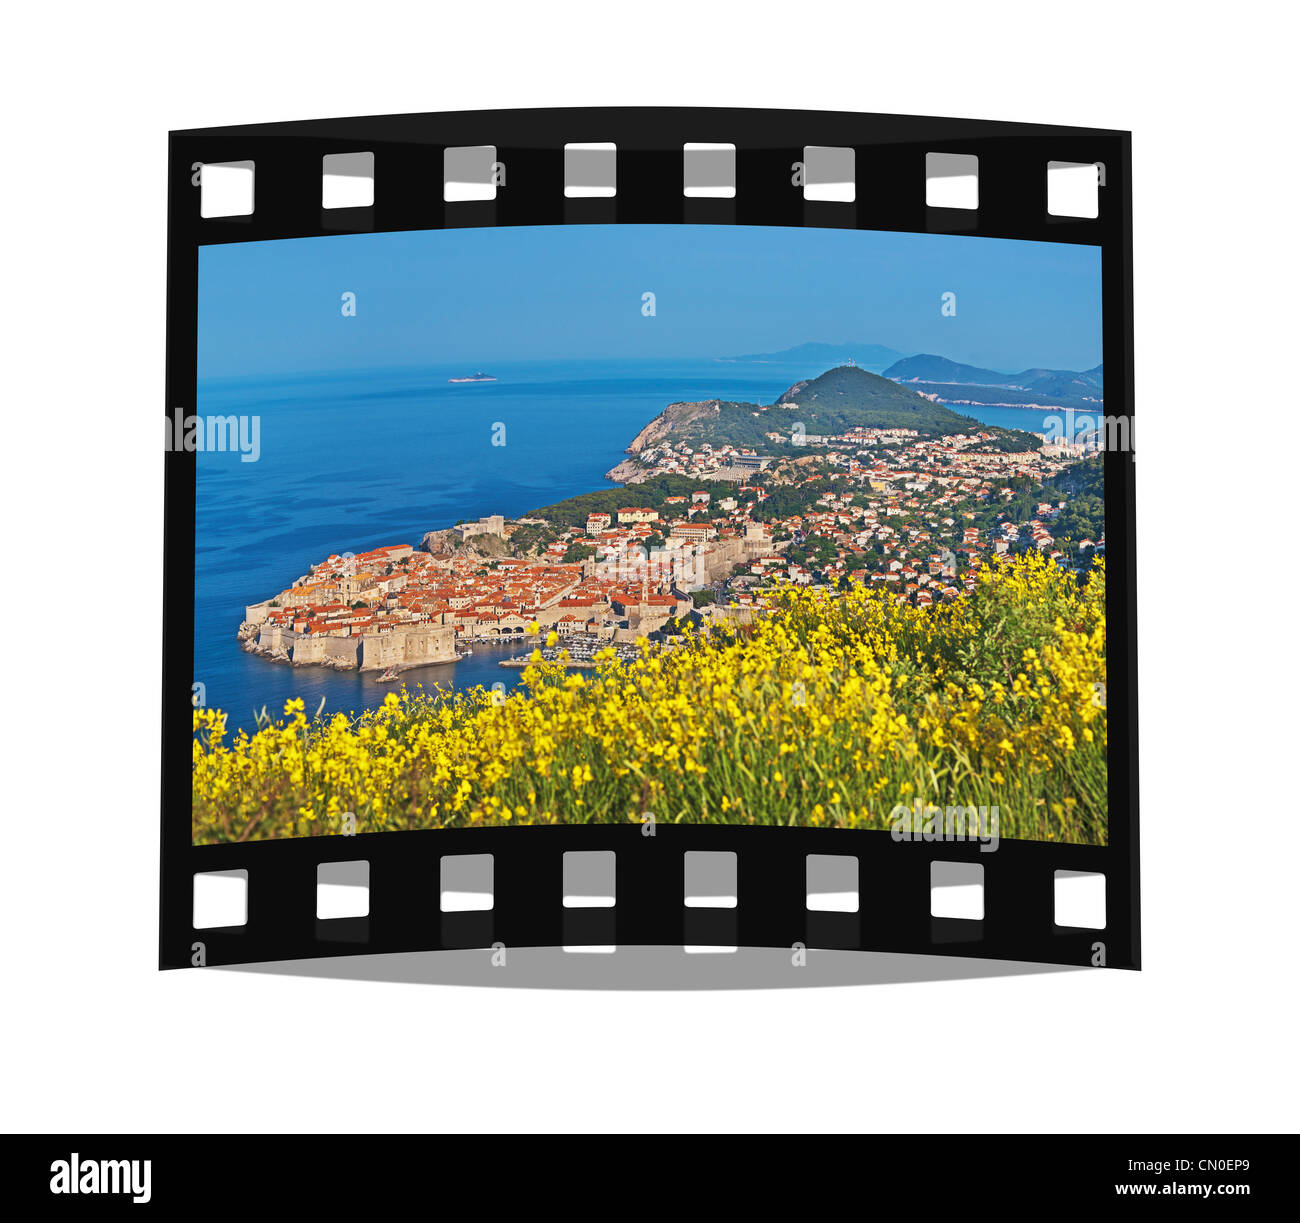 Film fixe : vue depuis le mont Srd de la vieille ville de Dubrovnik, Dalmatie, Croatie, Europe Banque D'Images